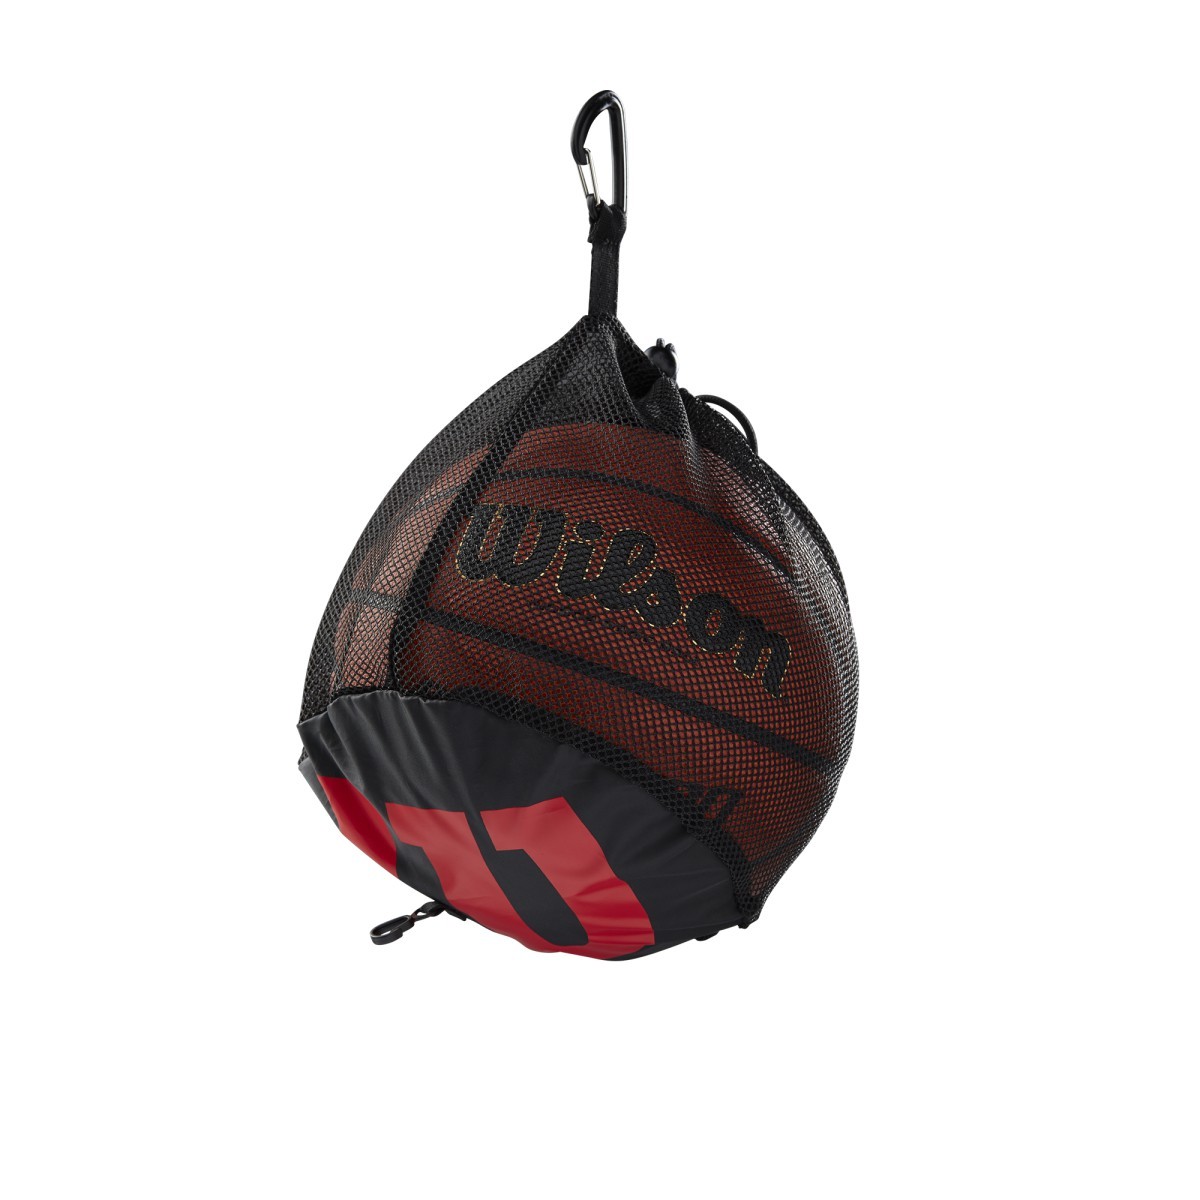 Wilson Basketballtasche